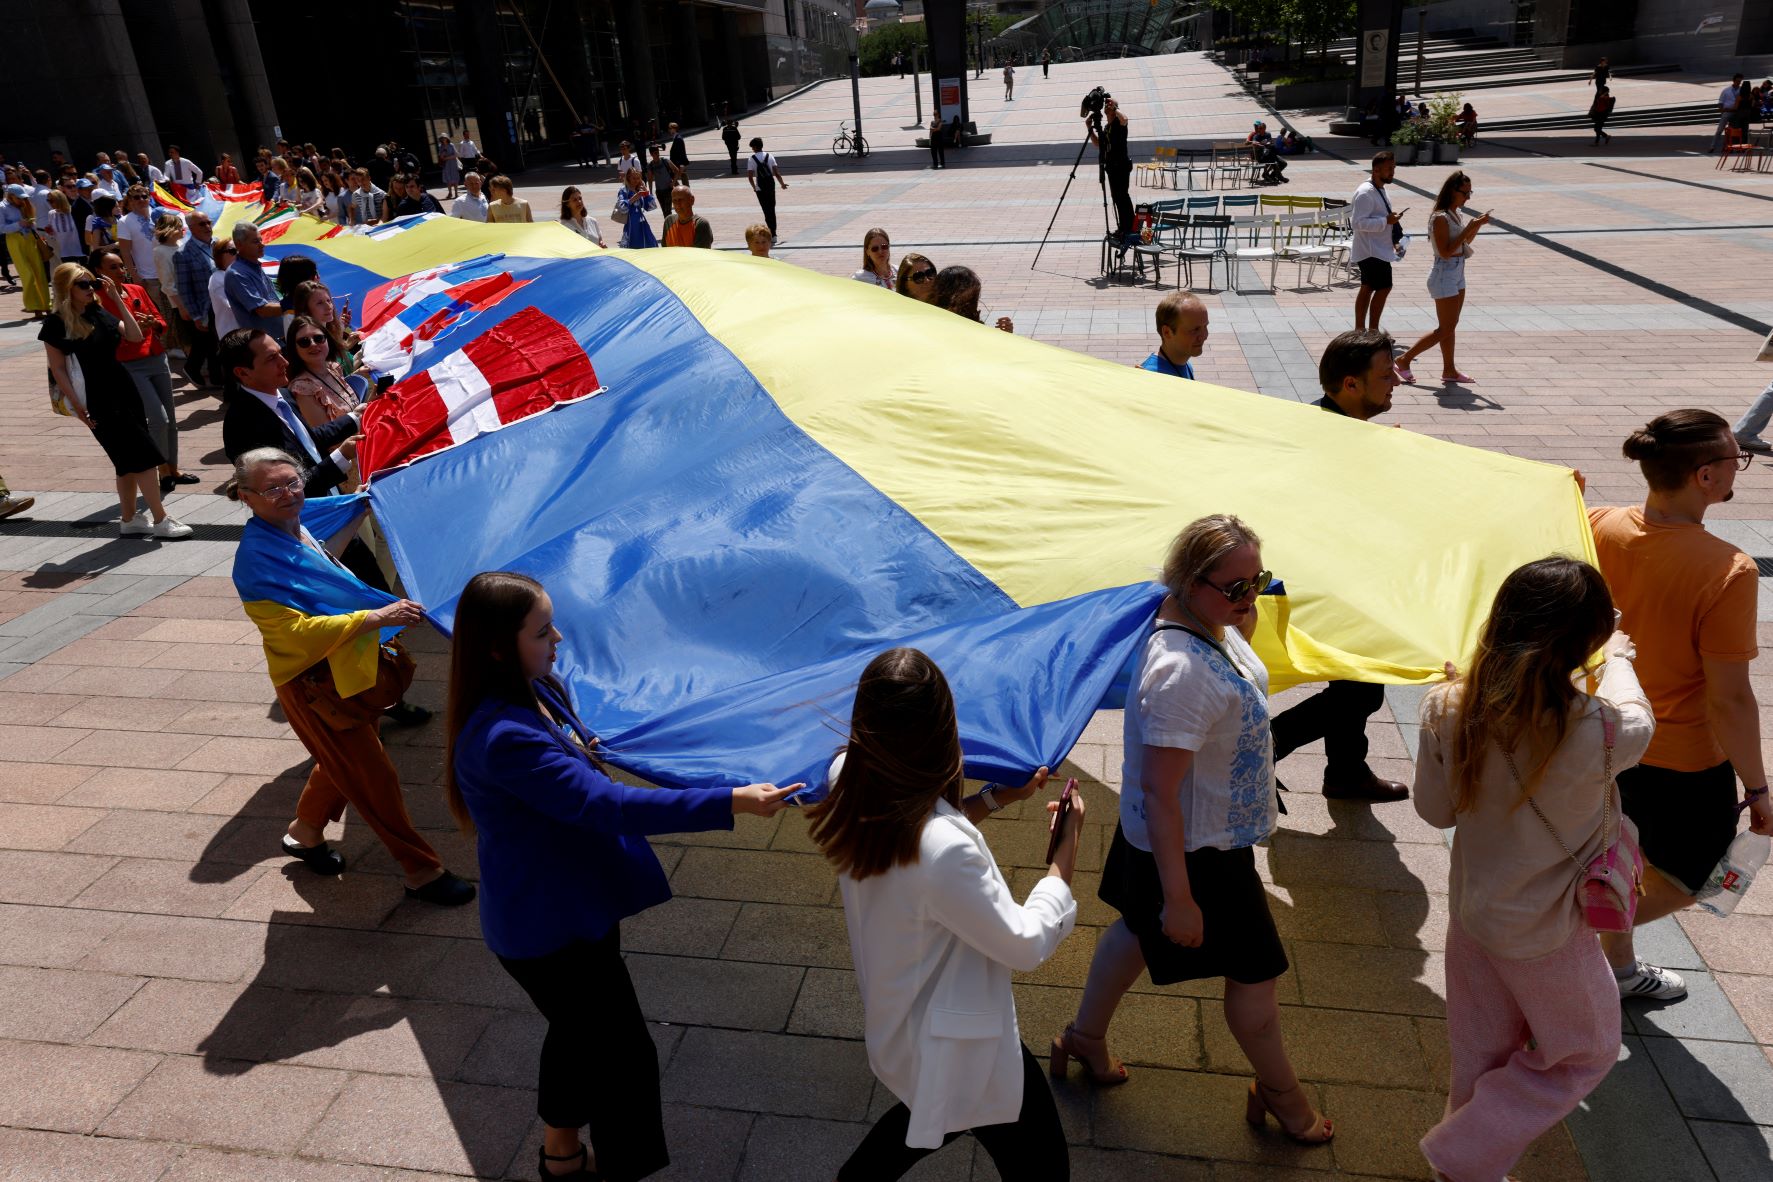 أوكرانيون ومشرعون أوروبيون يبسطون علم لأوكرانيا طوله 30 متر أمام مقر البرلمان الأوروبي لحثه على تأييد انضمام كييف للكتلة الأوروبية 